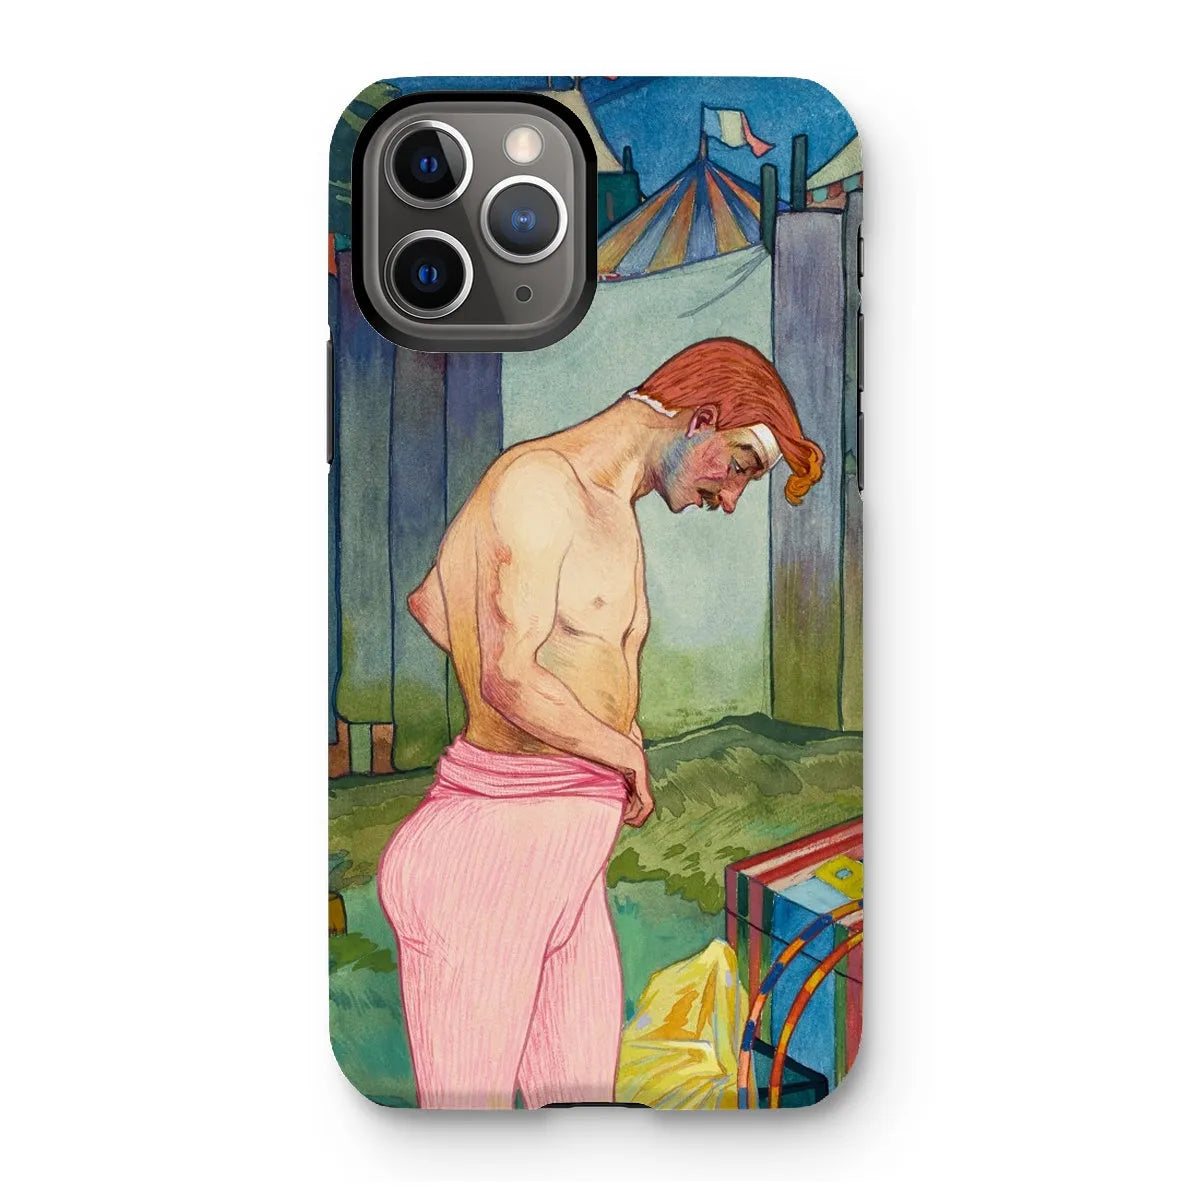 Le Cirque Corvi - French Art Phone Case - Georges De Feure - Iphone 11 Pro / Matte - Mobile Phone Cases - Aesthetic Art